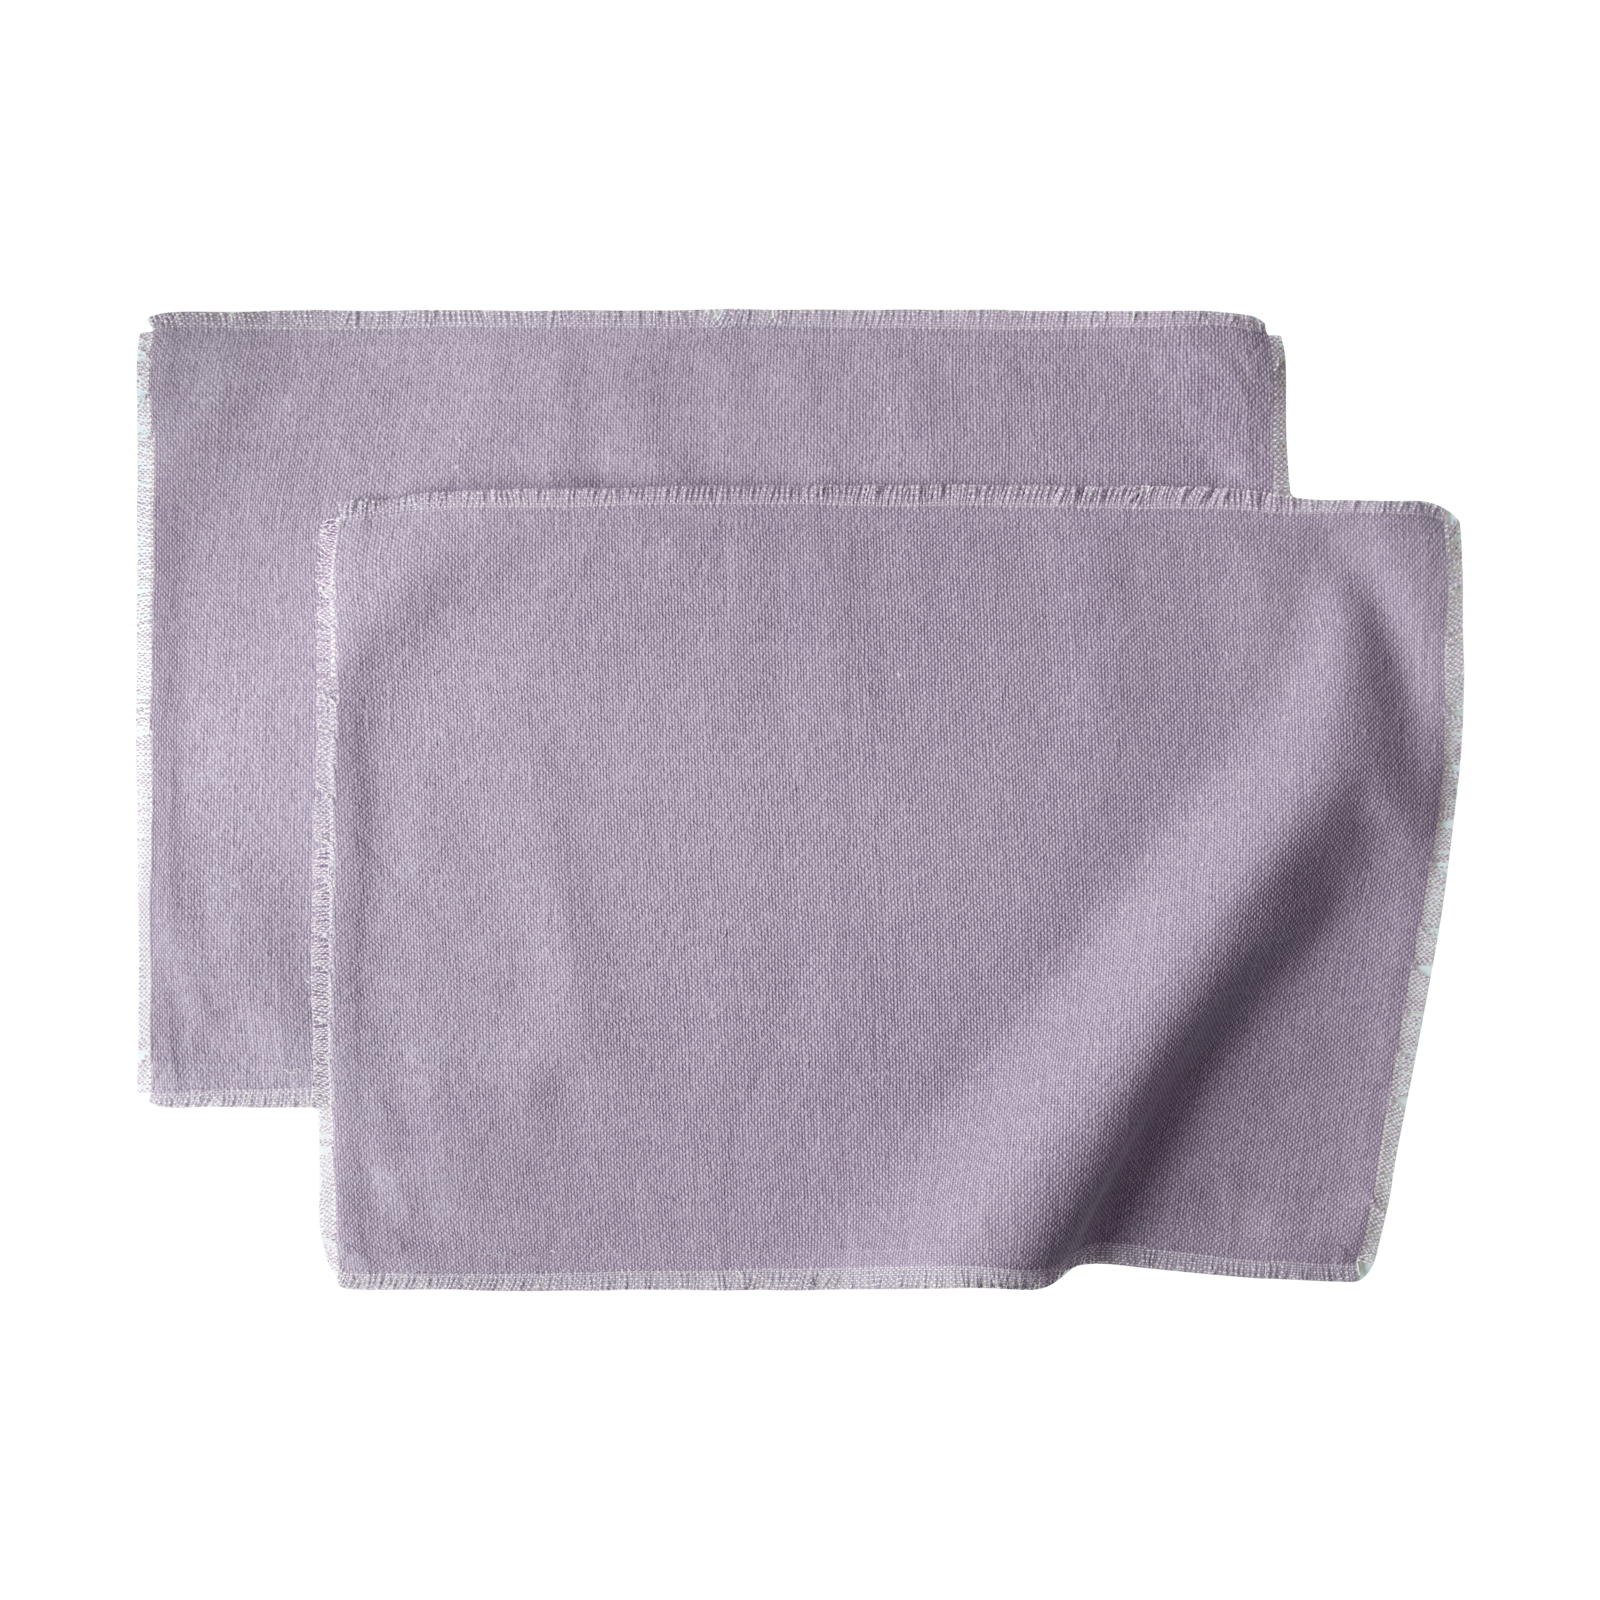 Größe: 33x 48 cm Farbe: lavendel #farbe_lavendel